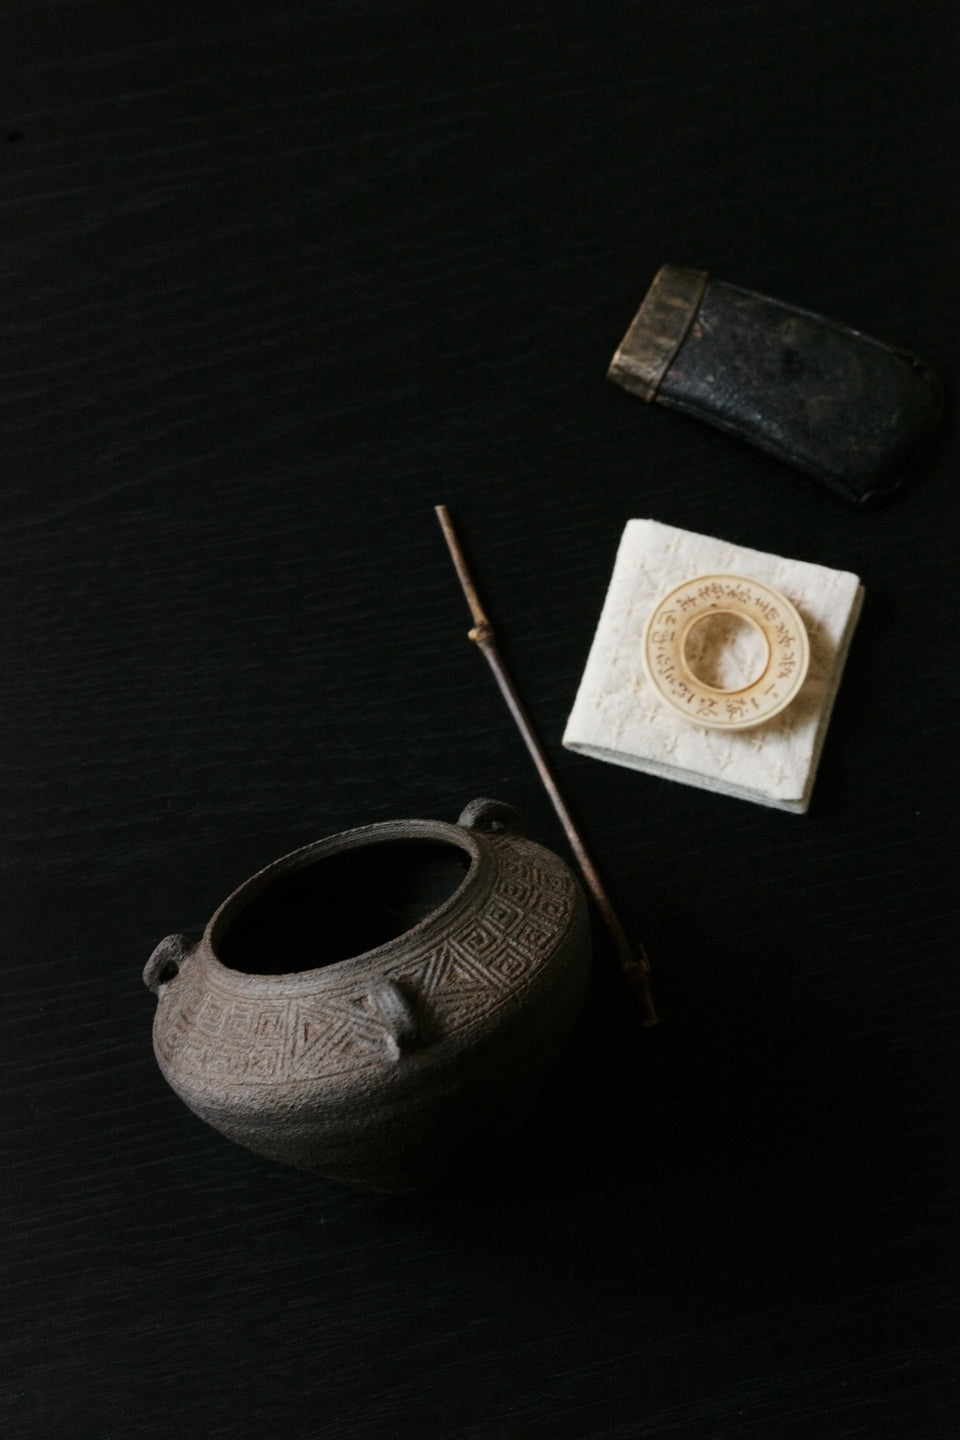 Jianshui with Zhou Bronze-Inspired Patterns - Ji Shang Zao Wu